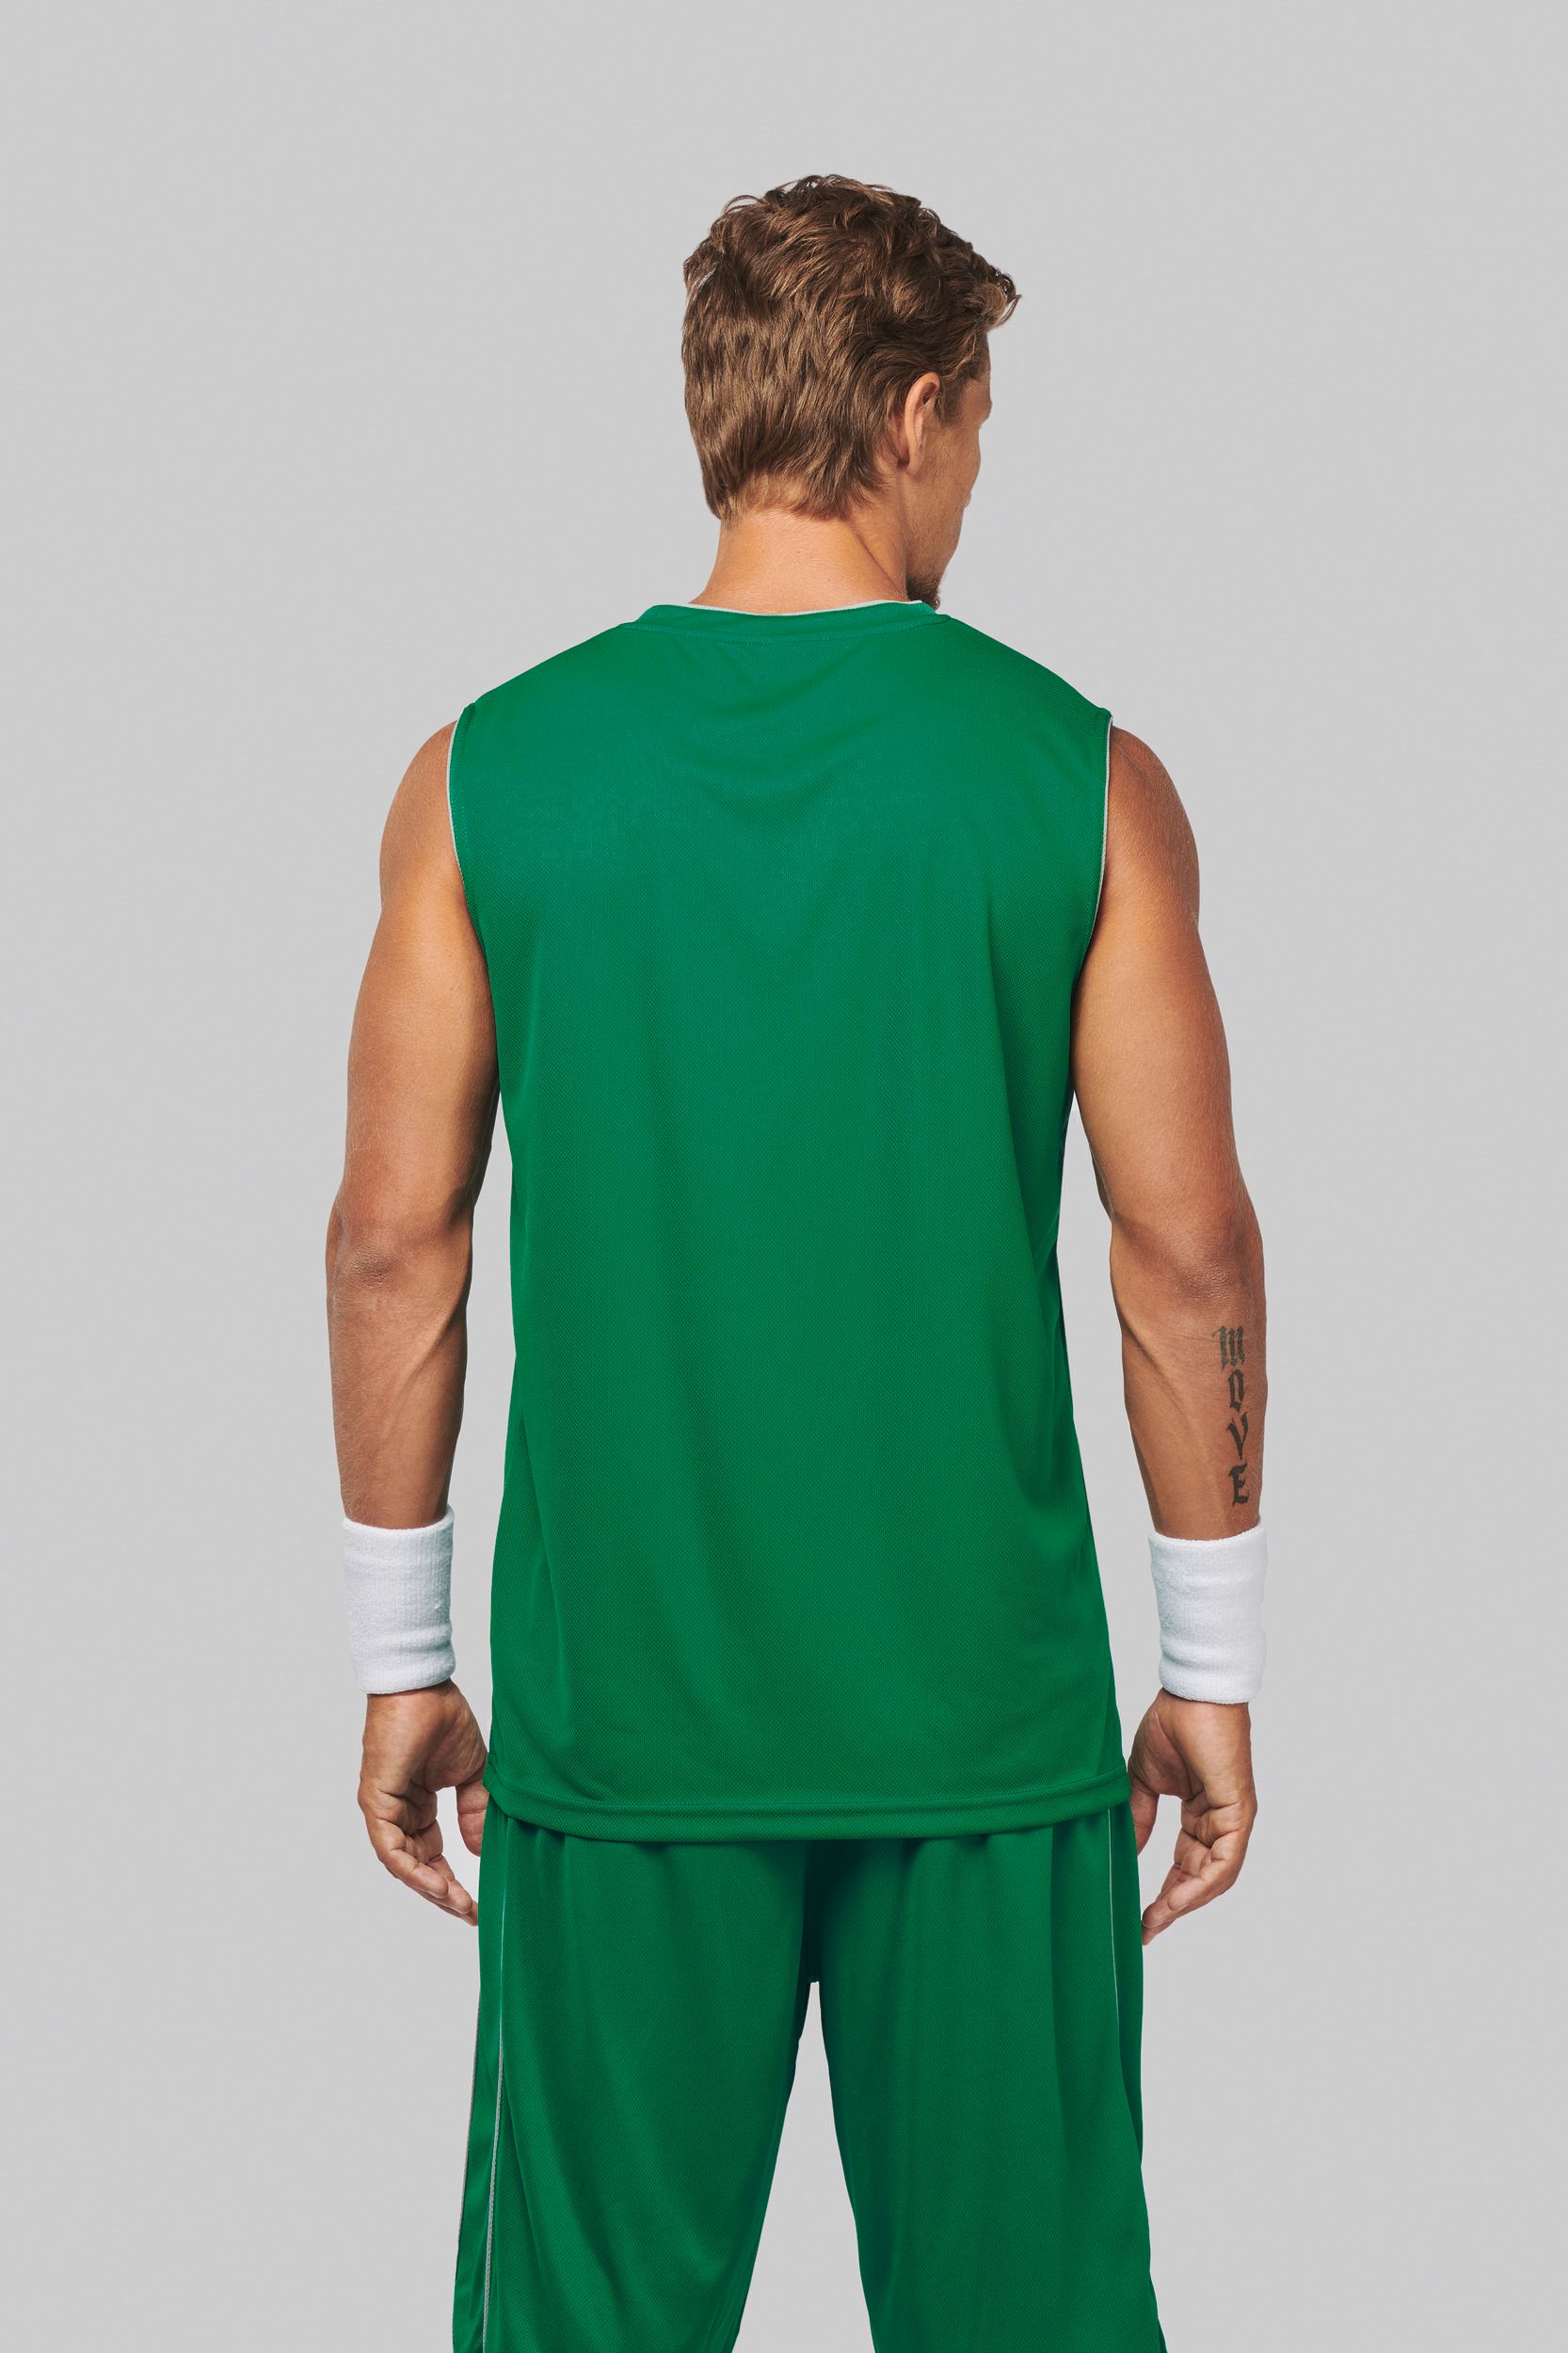 Basketbalový dres - trièko bez rukávù do V